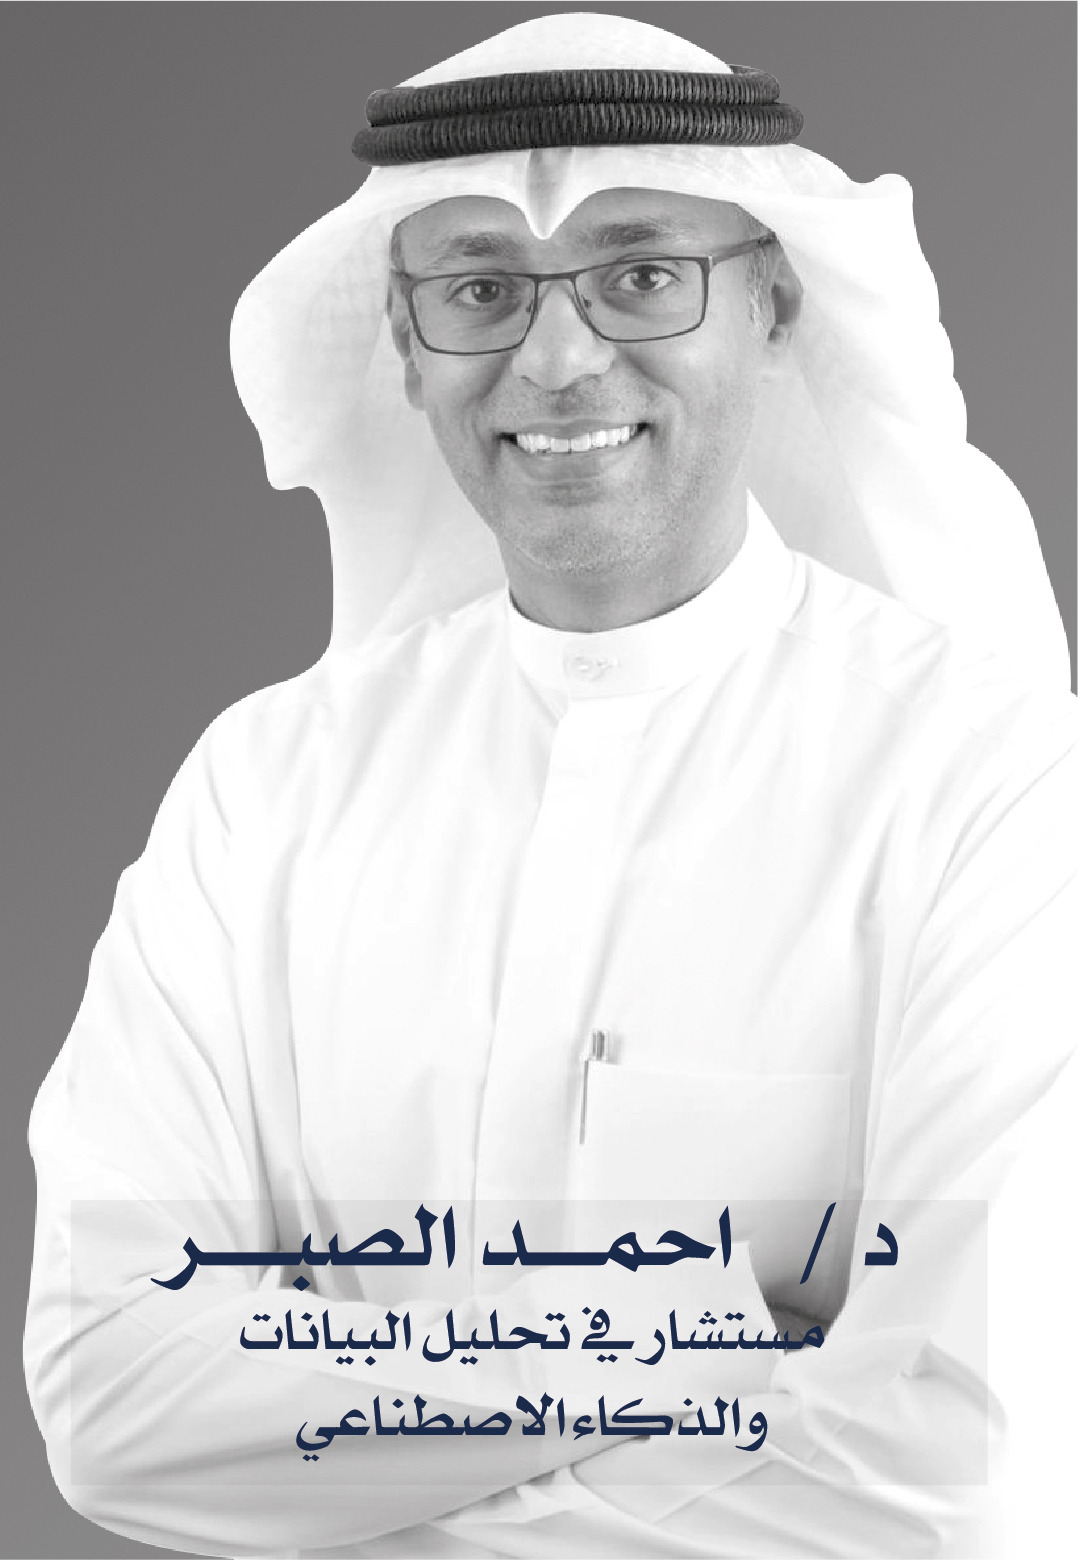 Dr. Ahmed Al- Saber